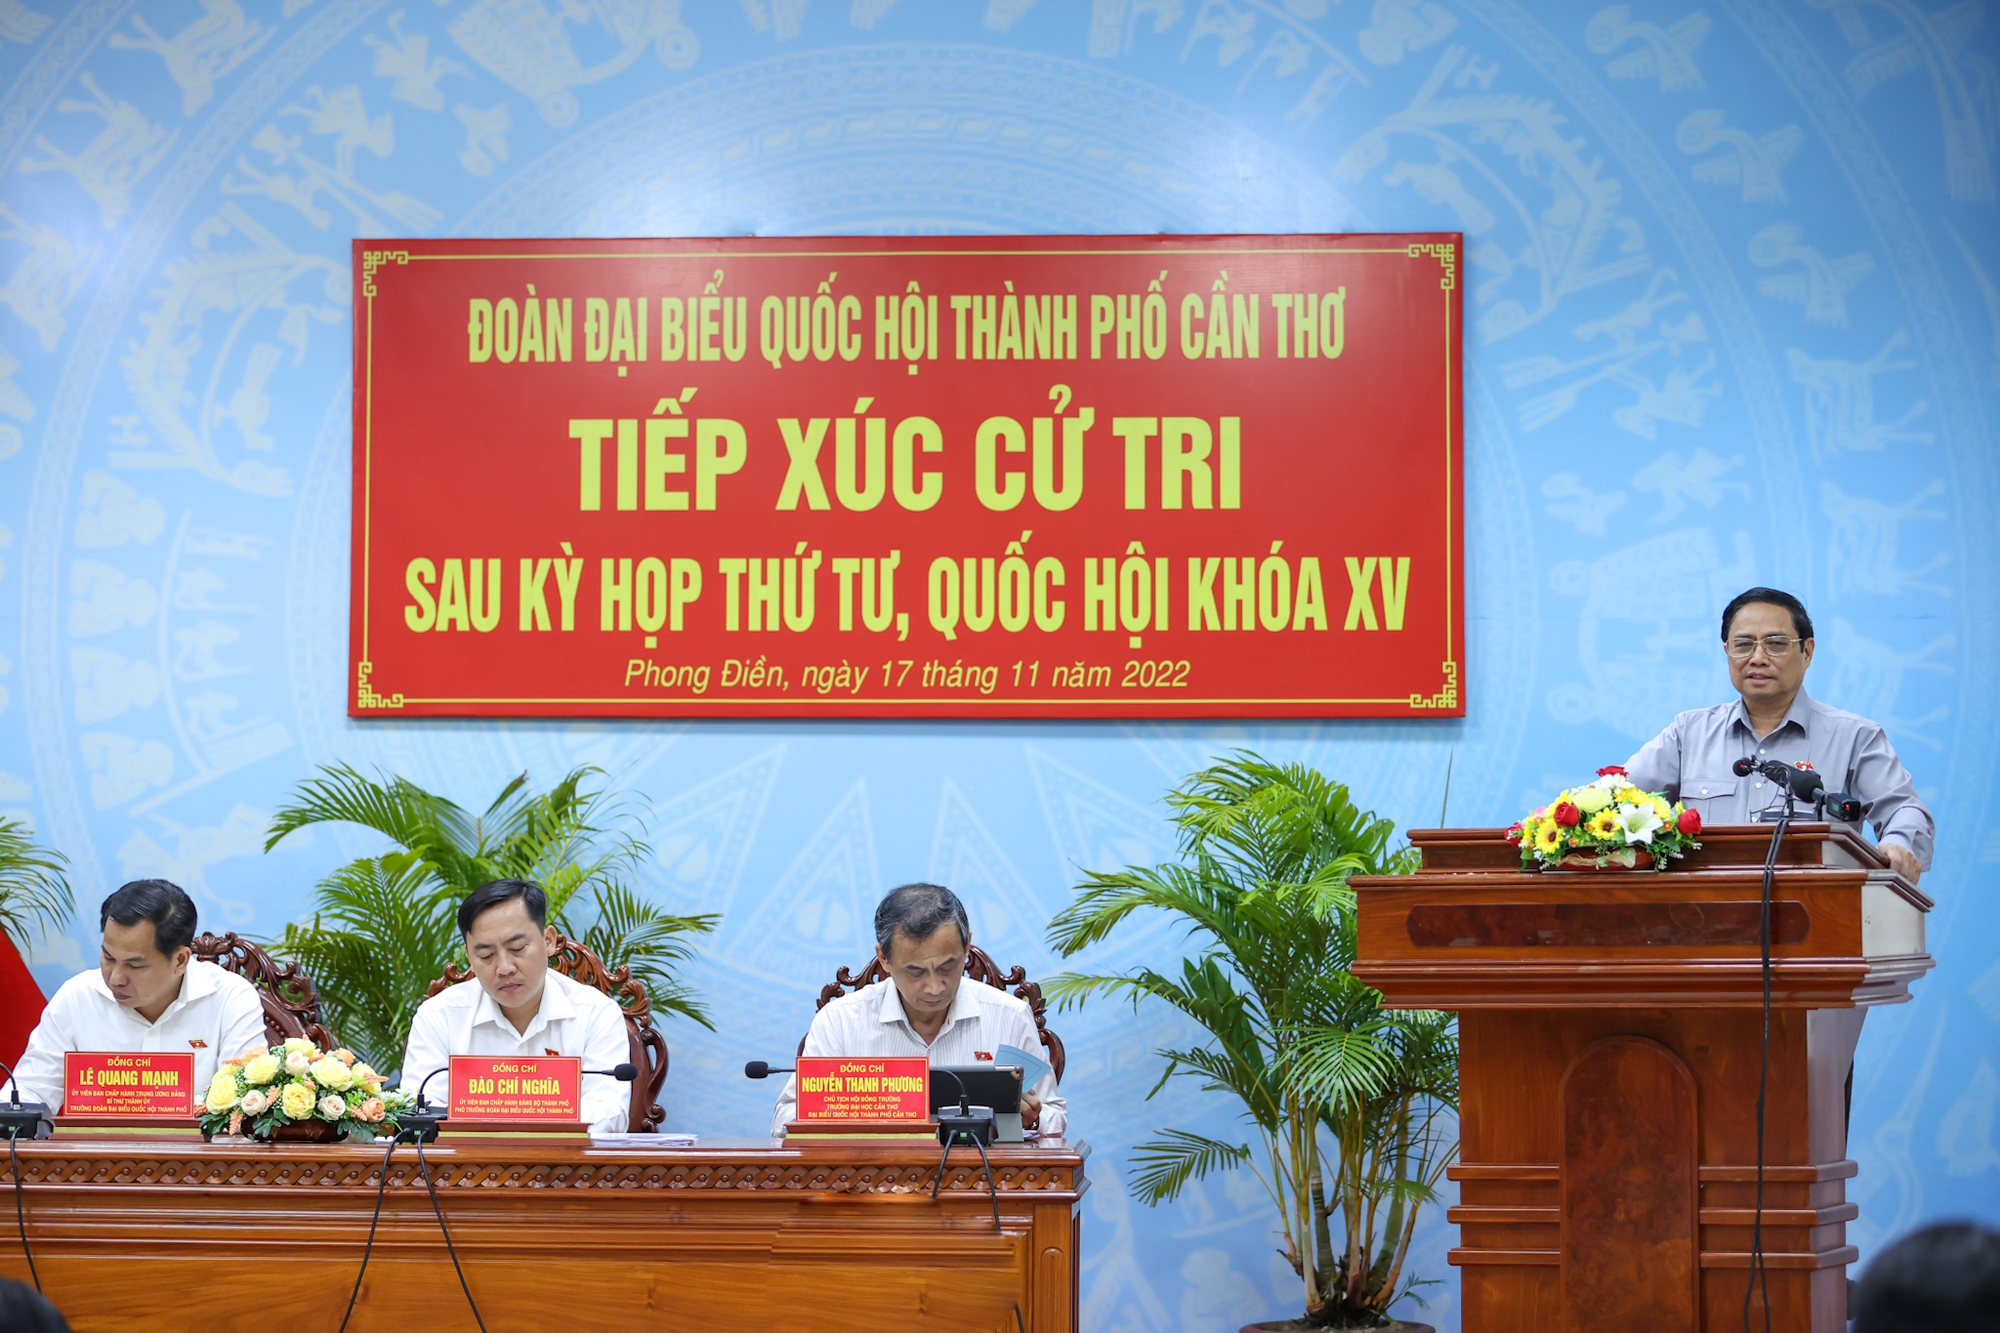 Chùm ảnh: Thủ tướng Phạm Minh Chính tiếp xúc cử tri Cần Thơ - Ảnh 10.